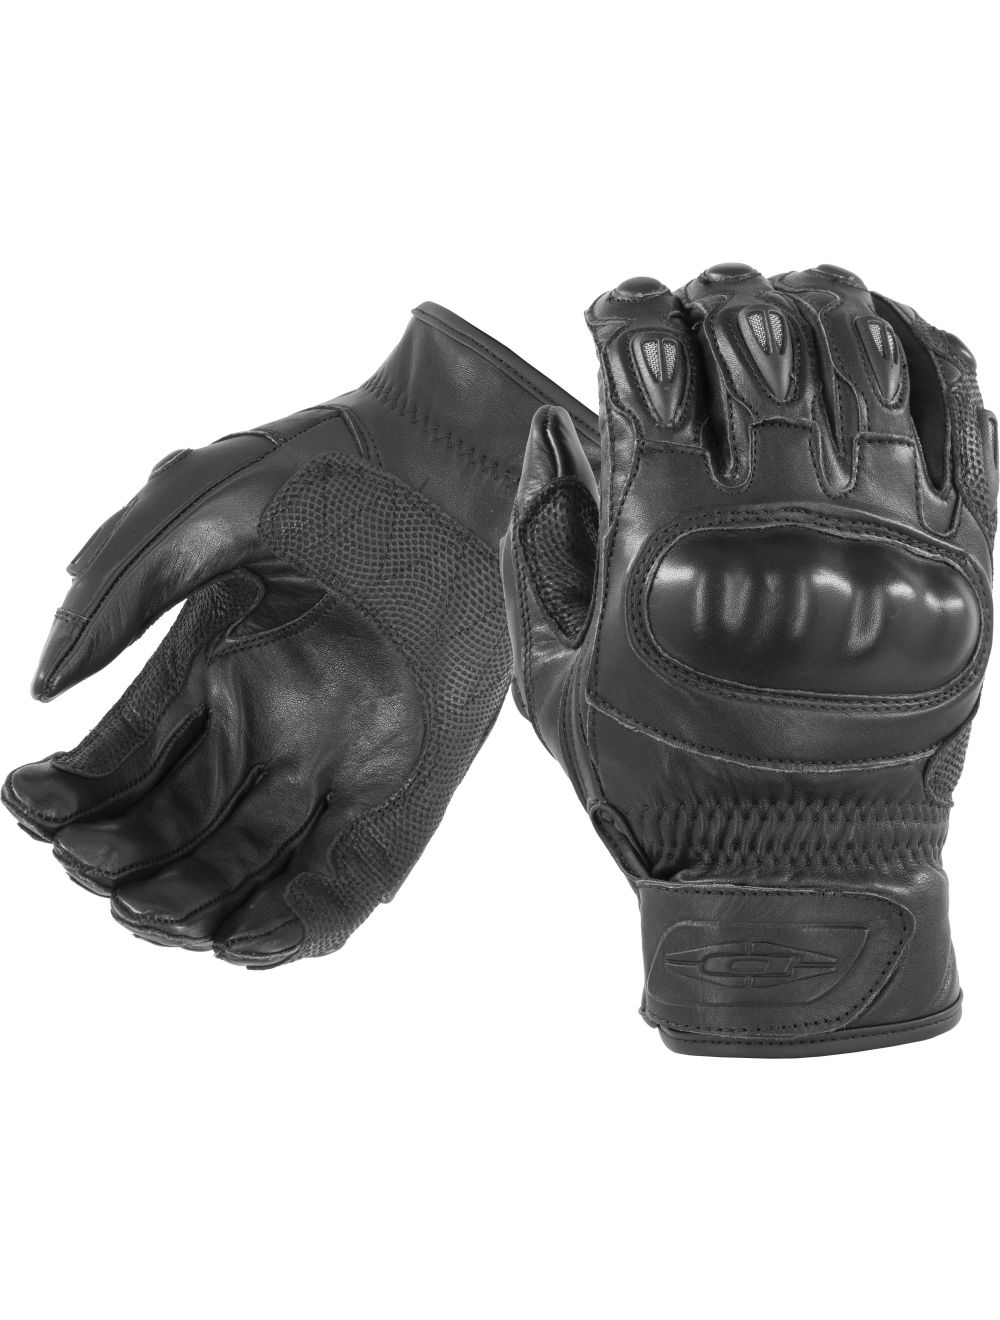 Vector Riot Control Gloves